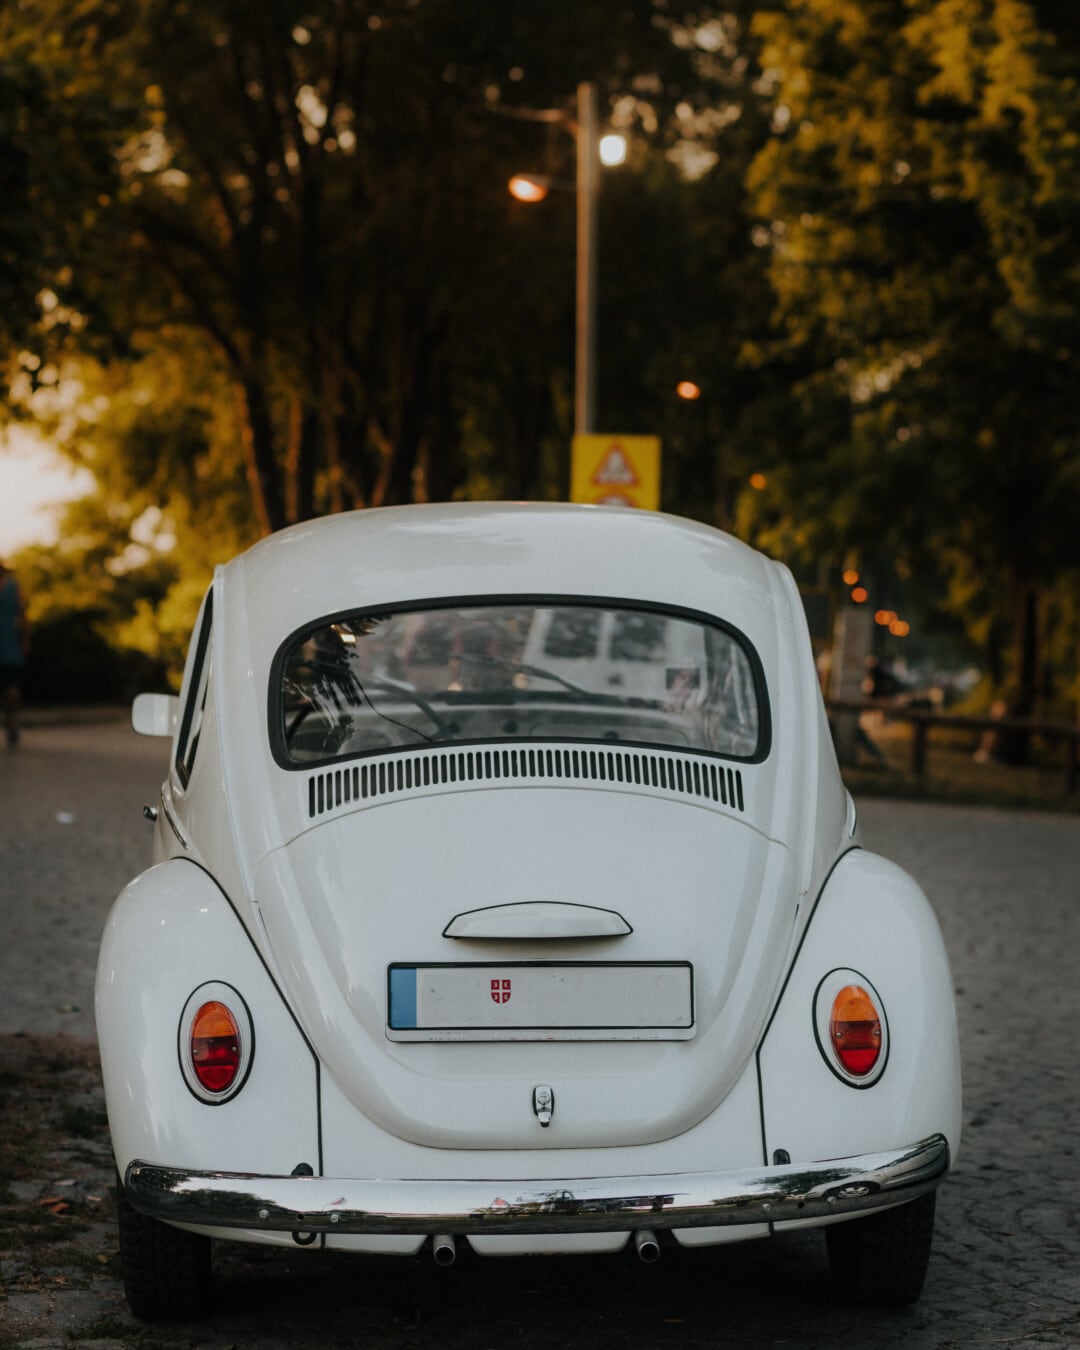 Volkswagen, chrząszcz, oldtimer, nostalgia, samochodu, samochodowe, motoryzacyjny, pojazd, transport, ulica